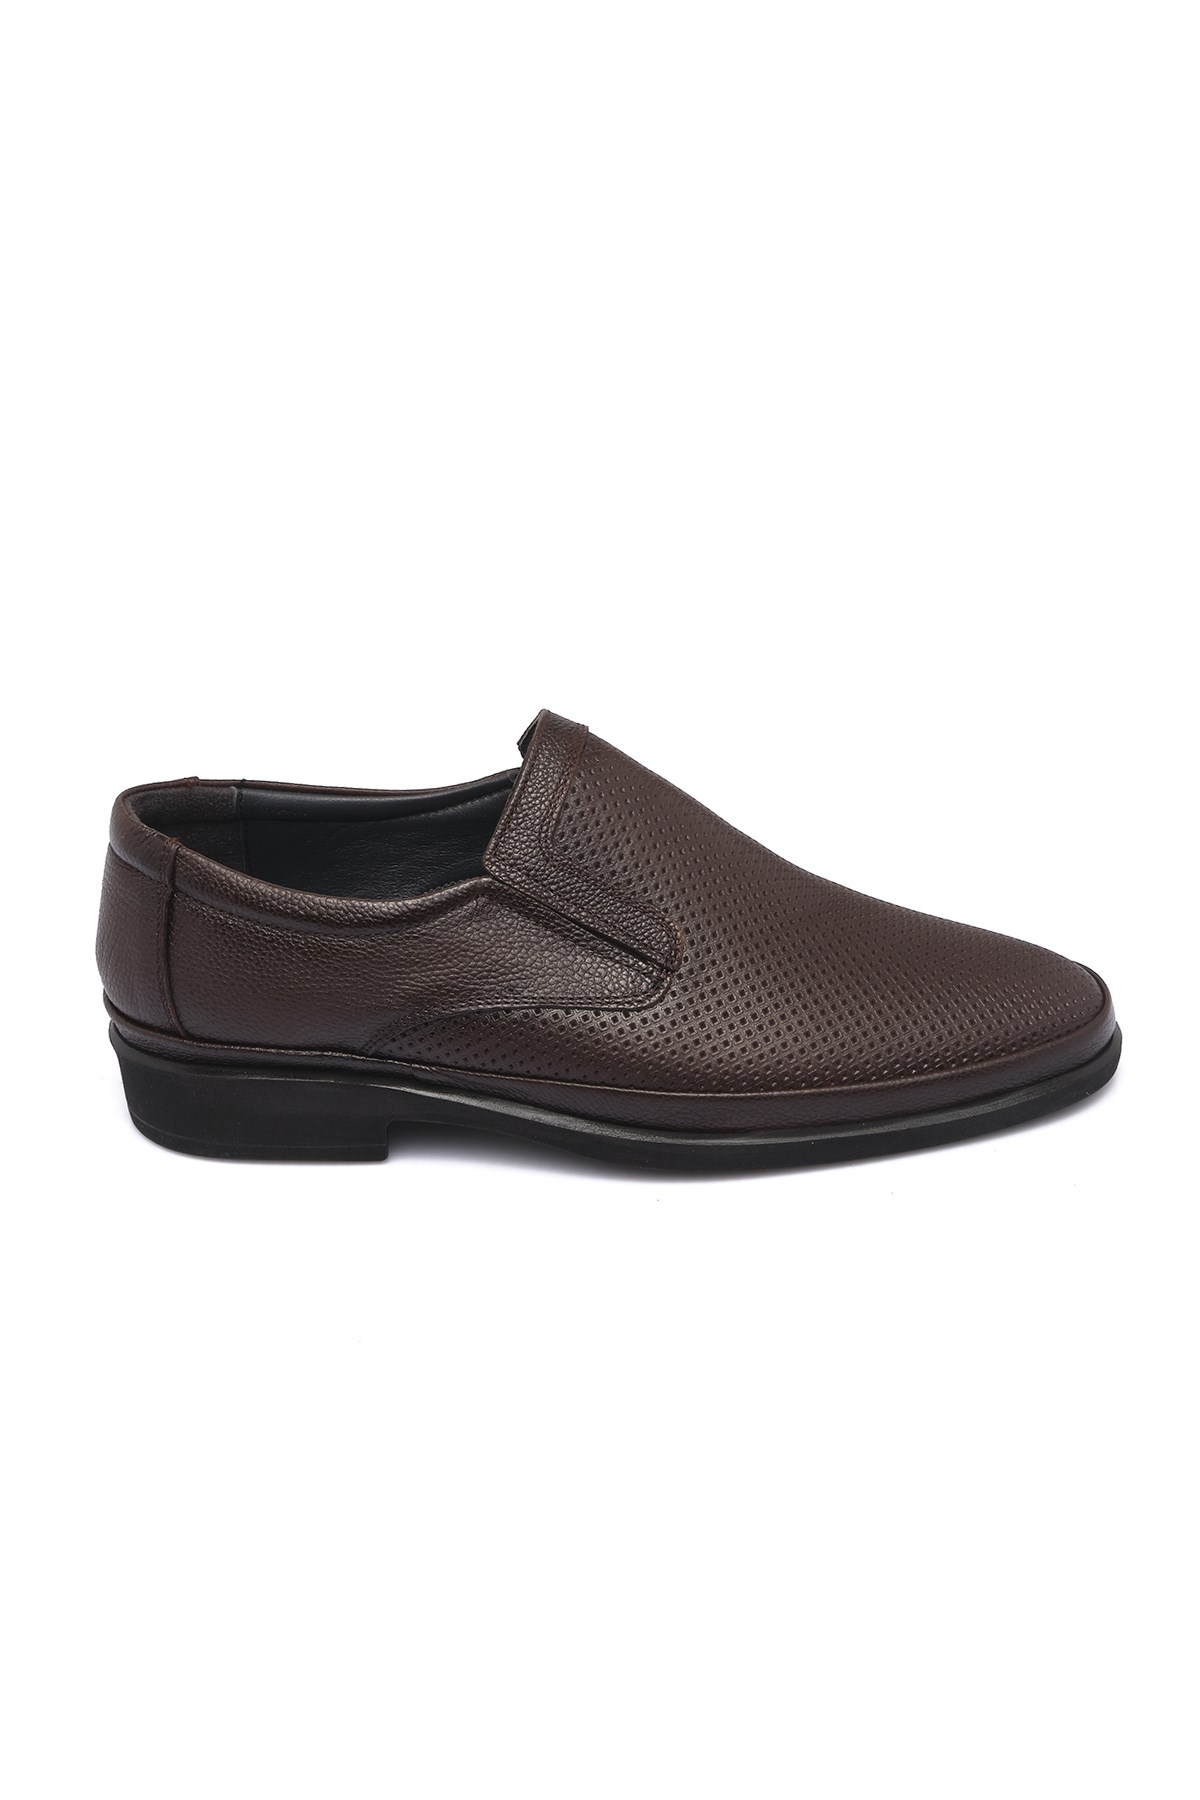 Bestello Zımbalı Comfort KAHVE 011-303-22Y Erkek Ayakkabı